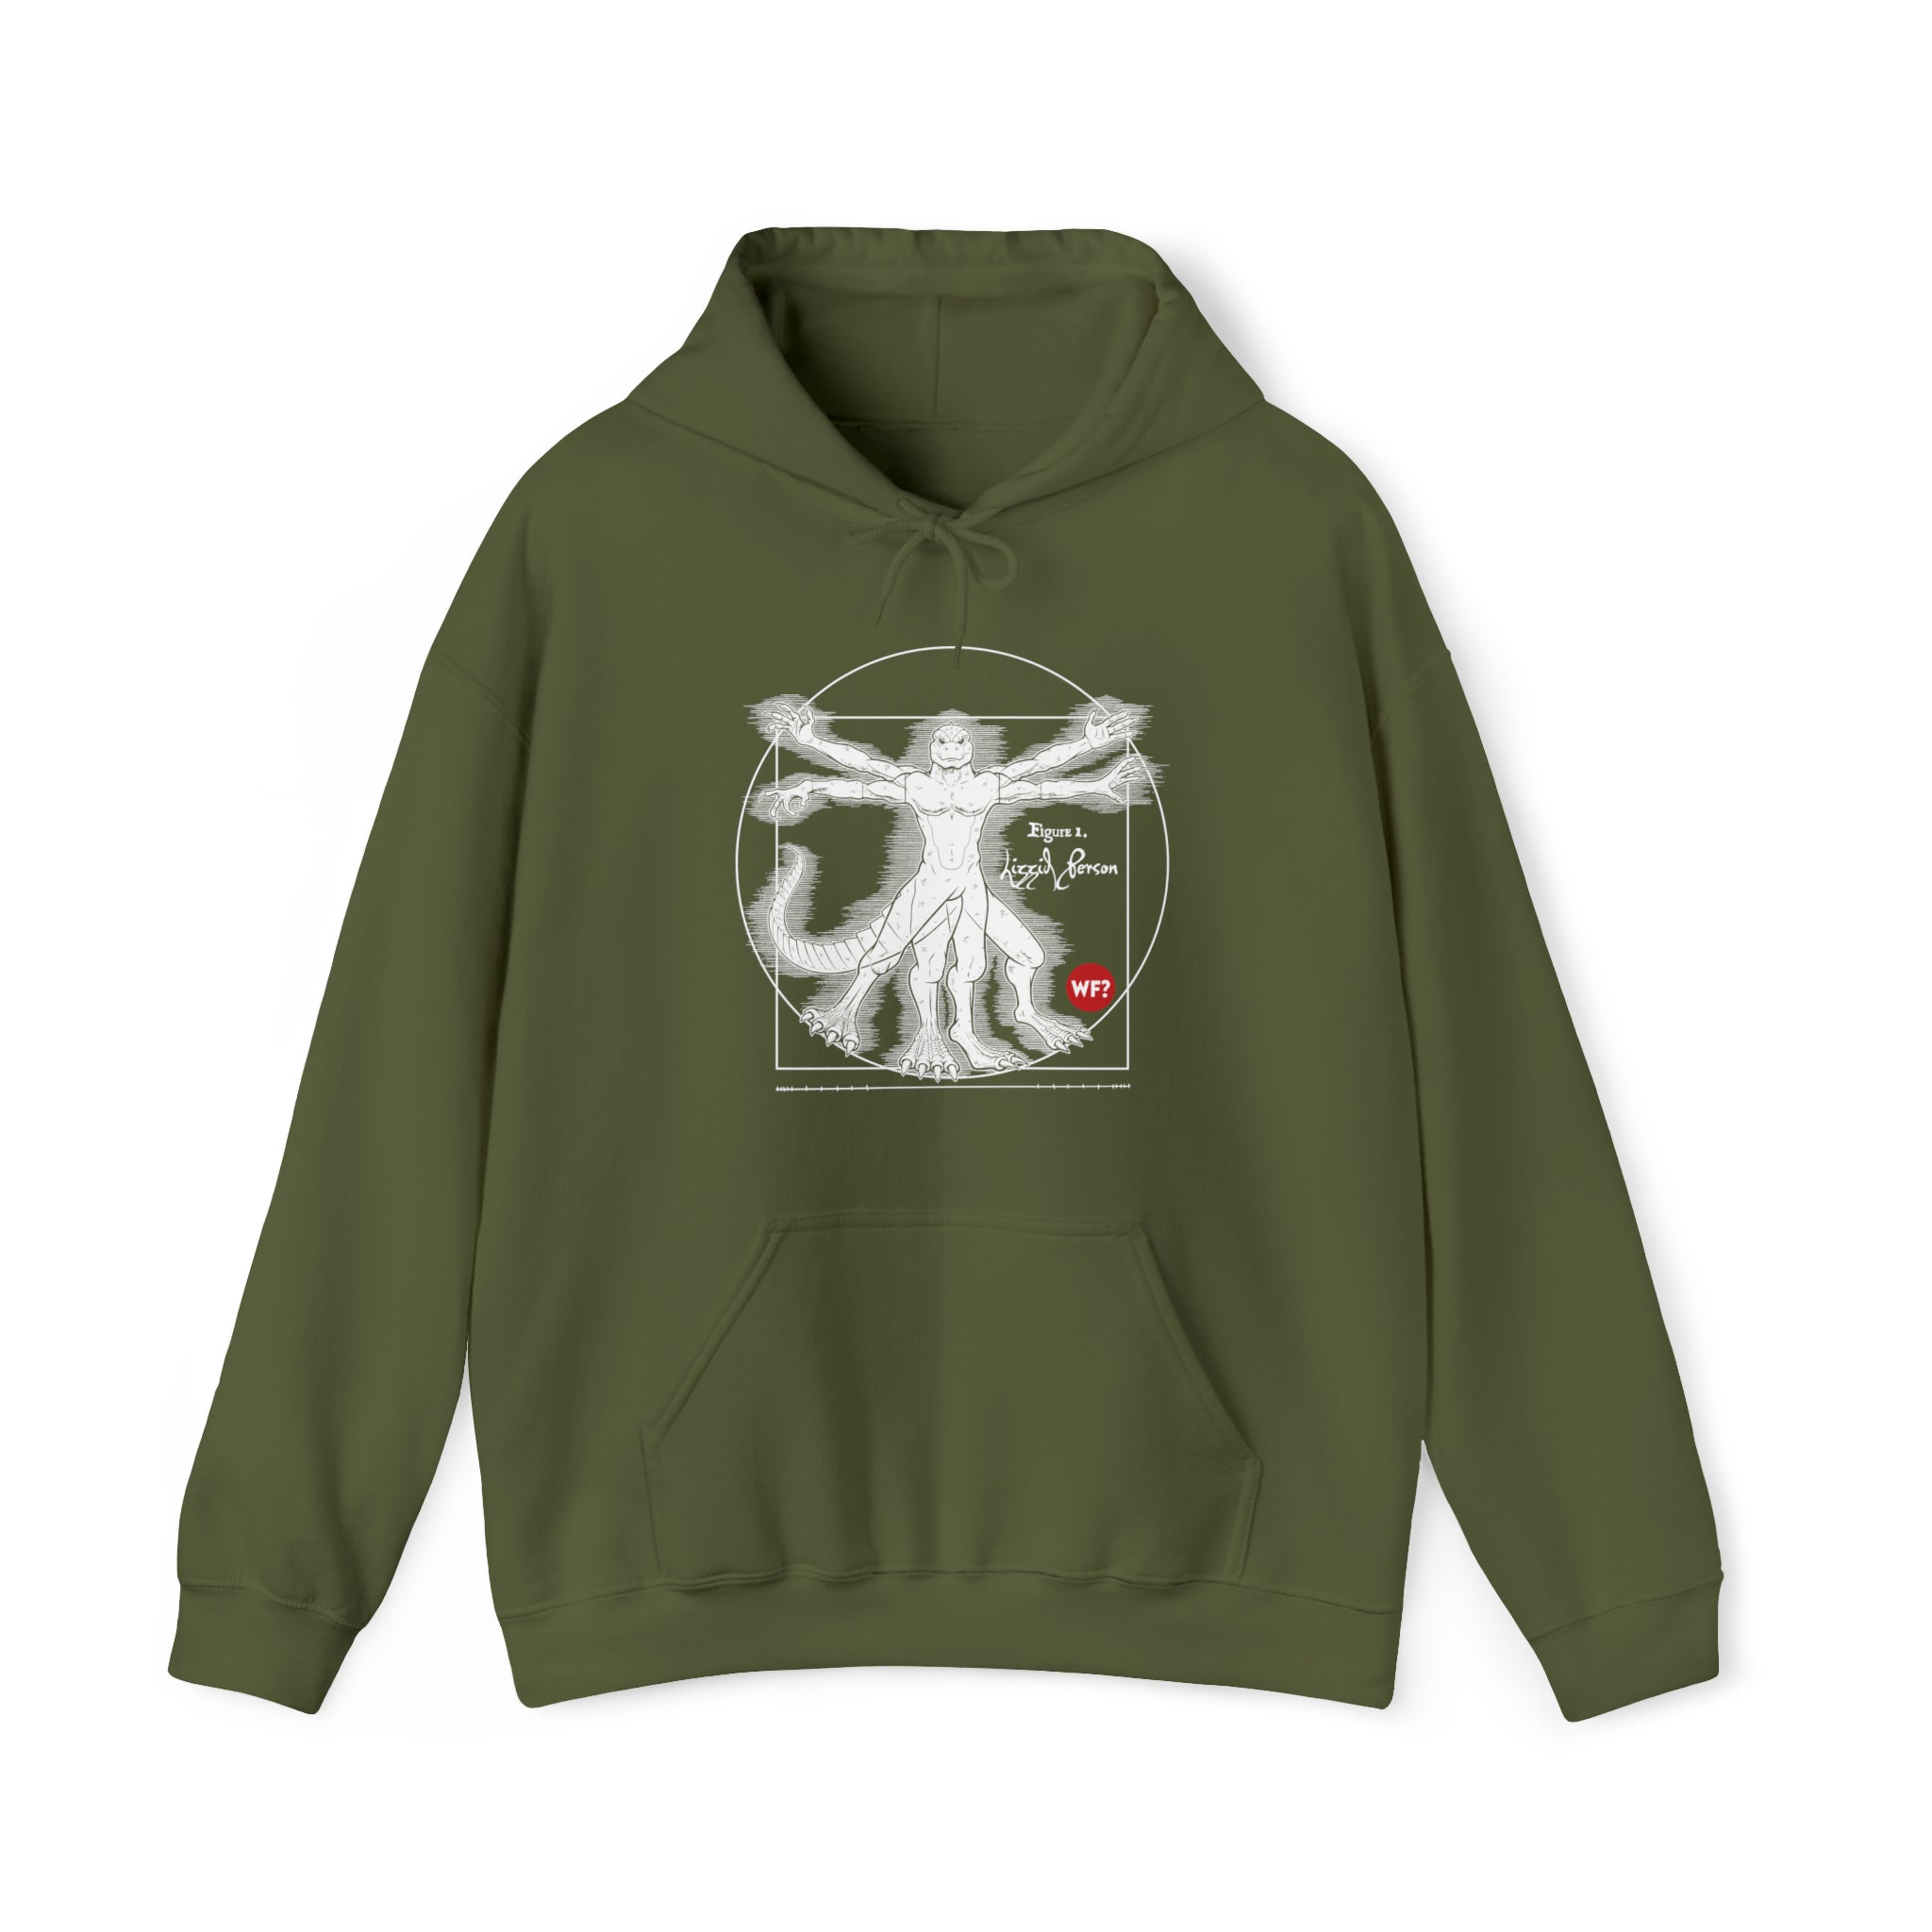 Buy military-green Vitruvian Lizzid Peeple Unisex Heavy Blend™ Hooded Sweatshirt